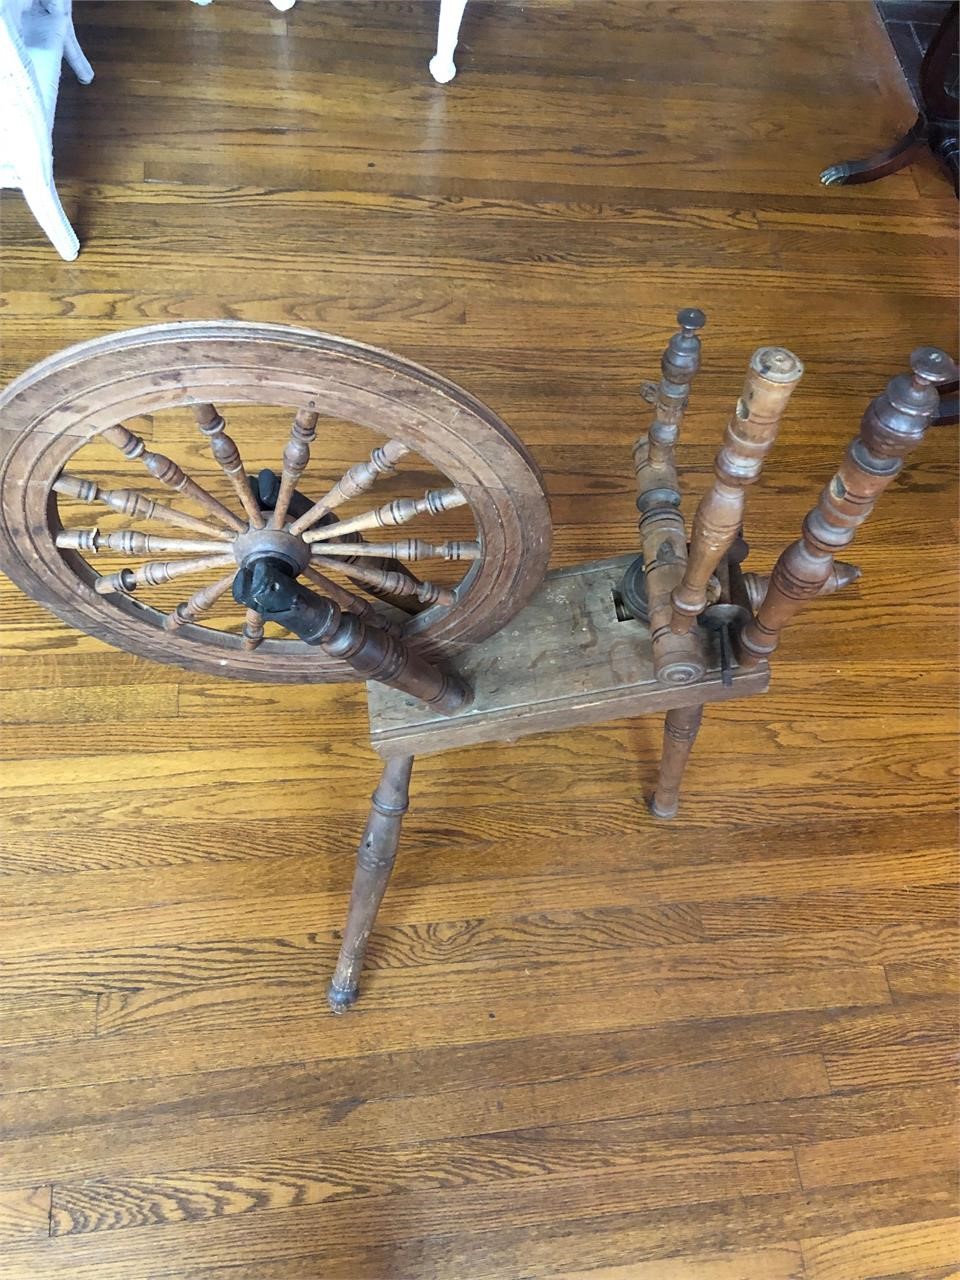 Spinning wheel need repair